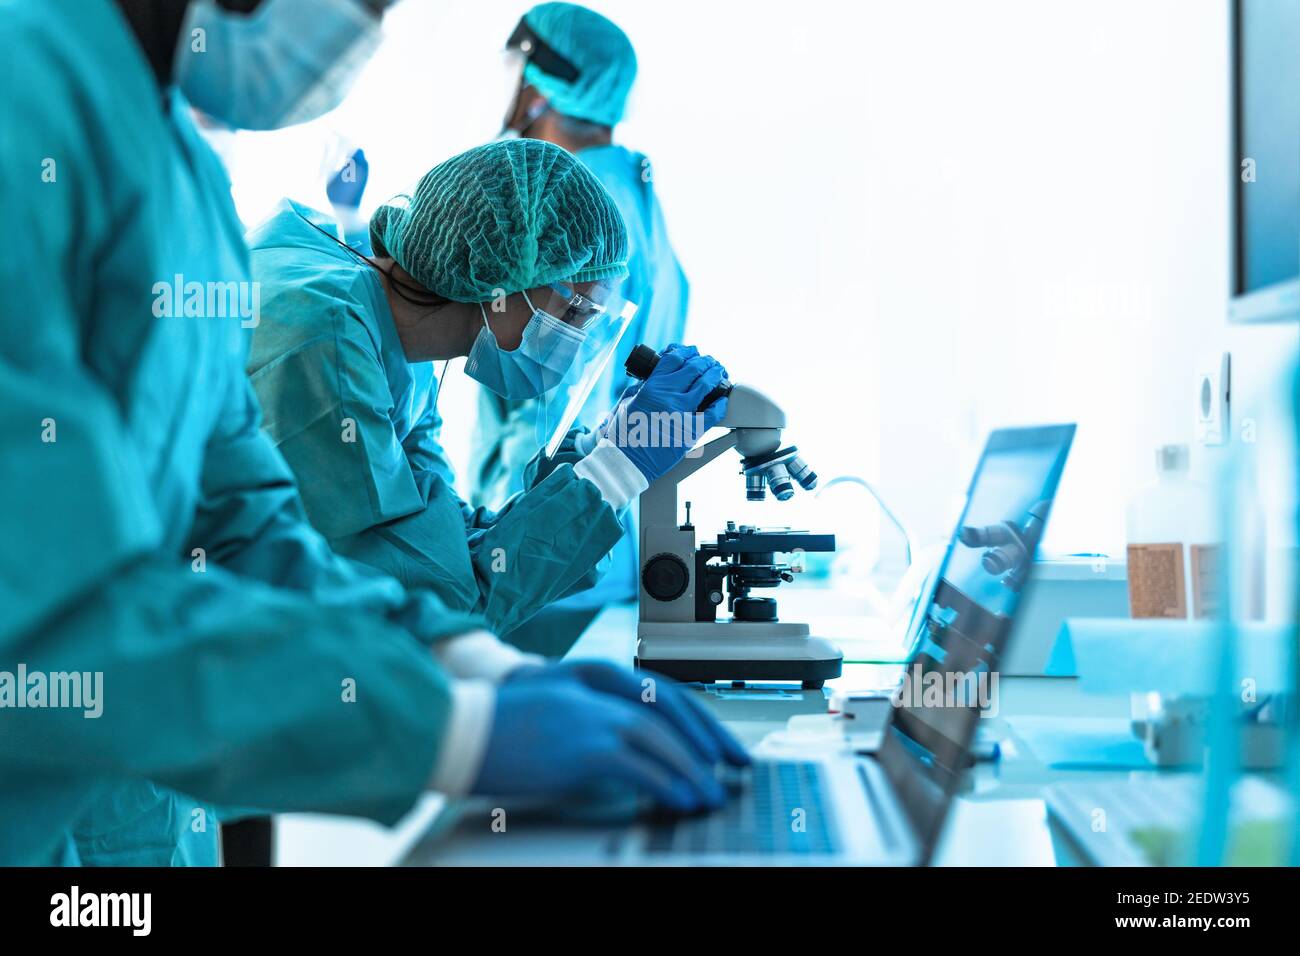 Operatori medici che fanno analisi in laboratorio durante l'epidemia di corona virus - concetto scientifico e sanitario Foto Stock